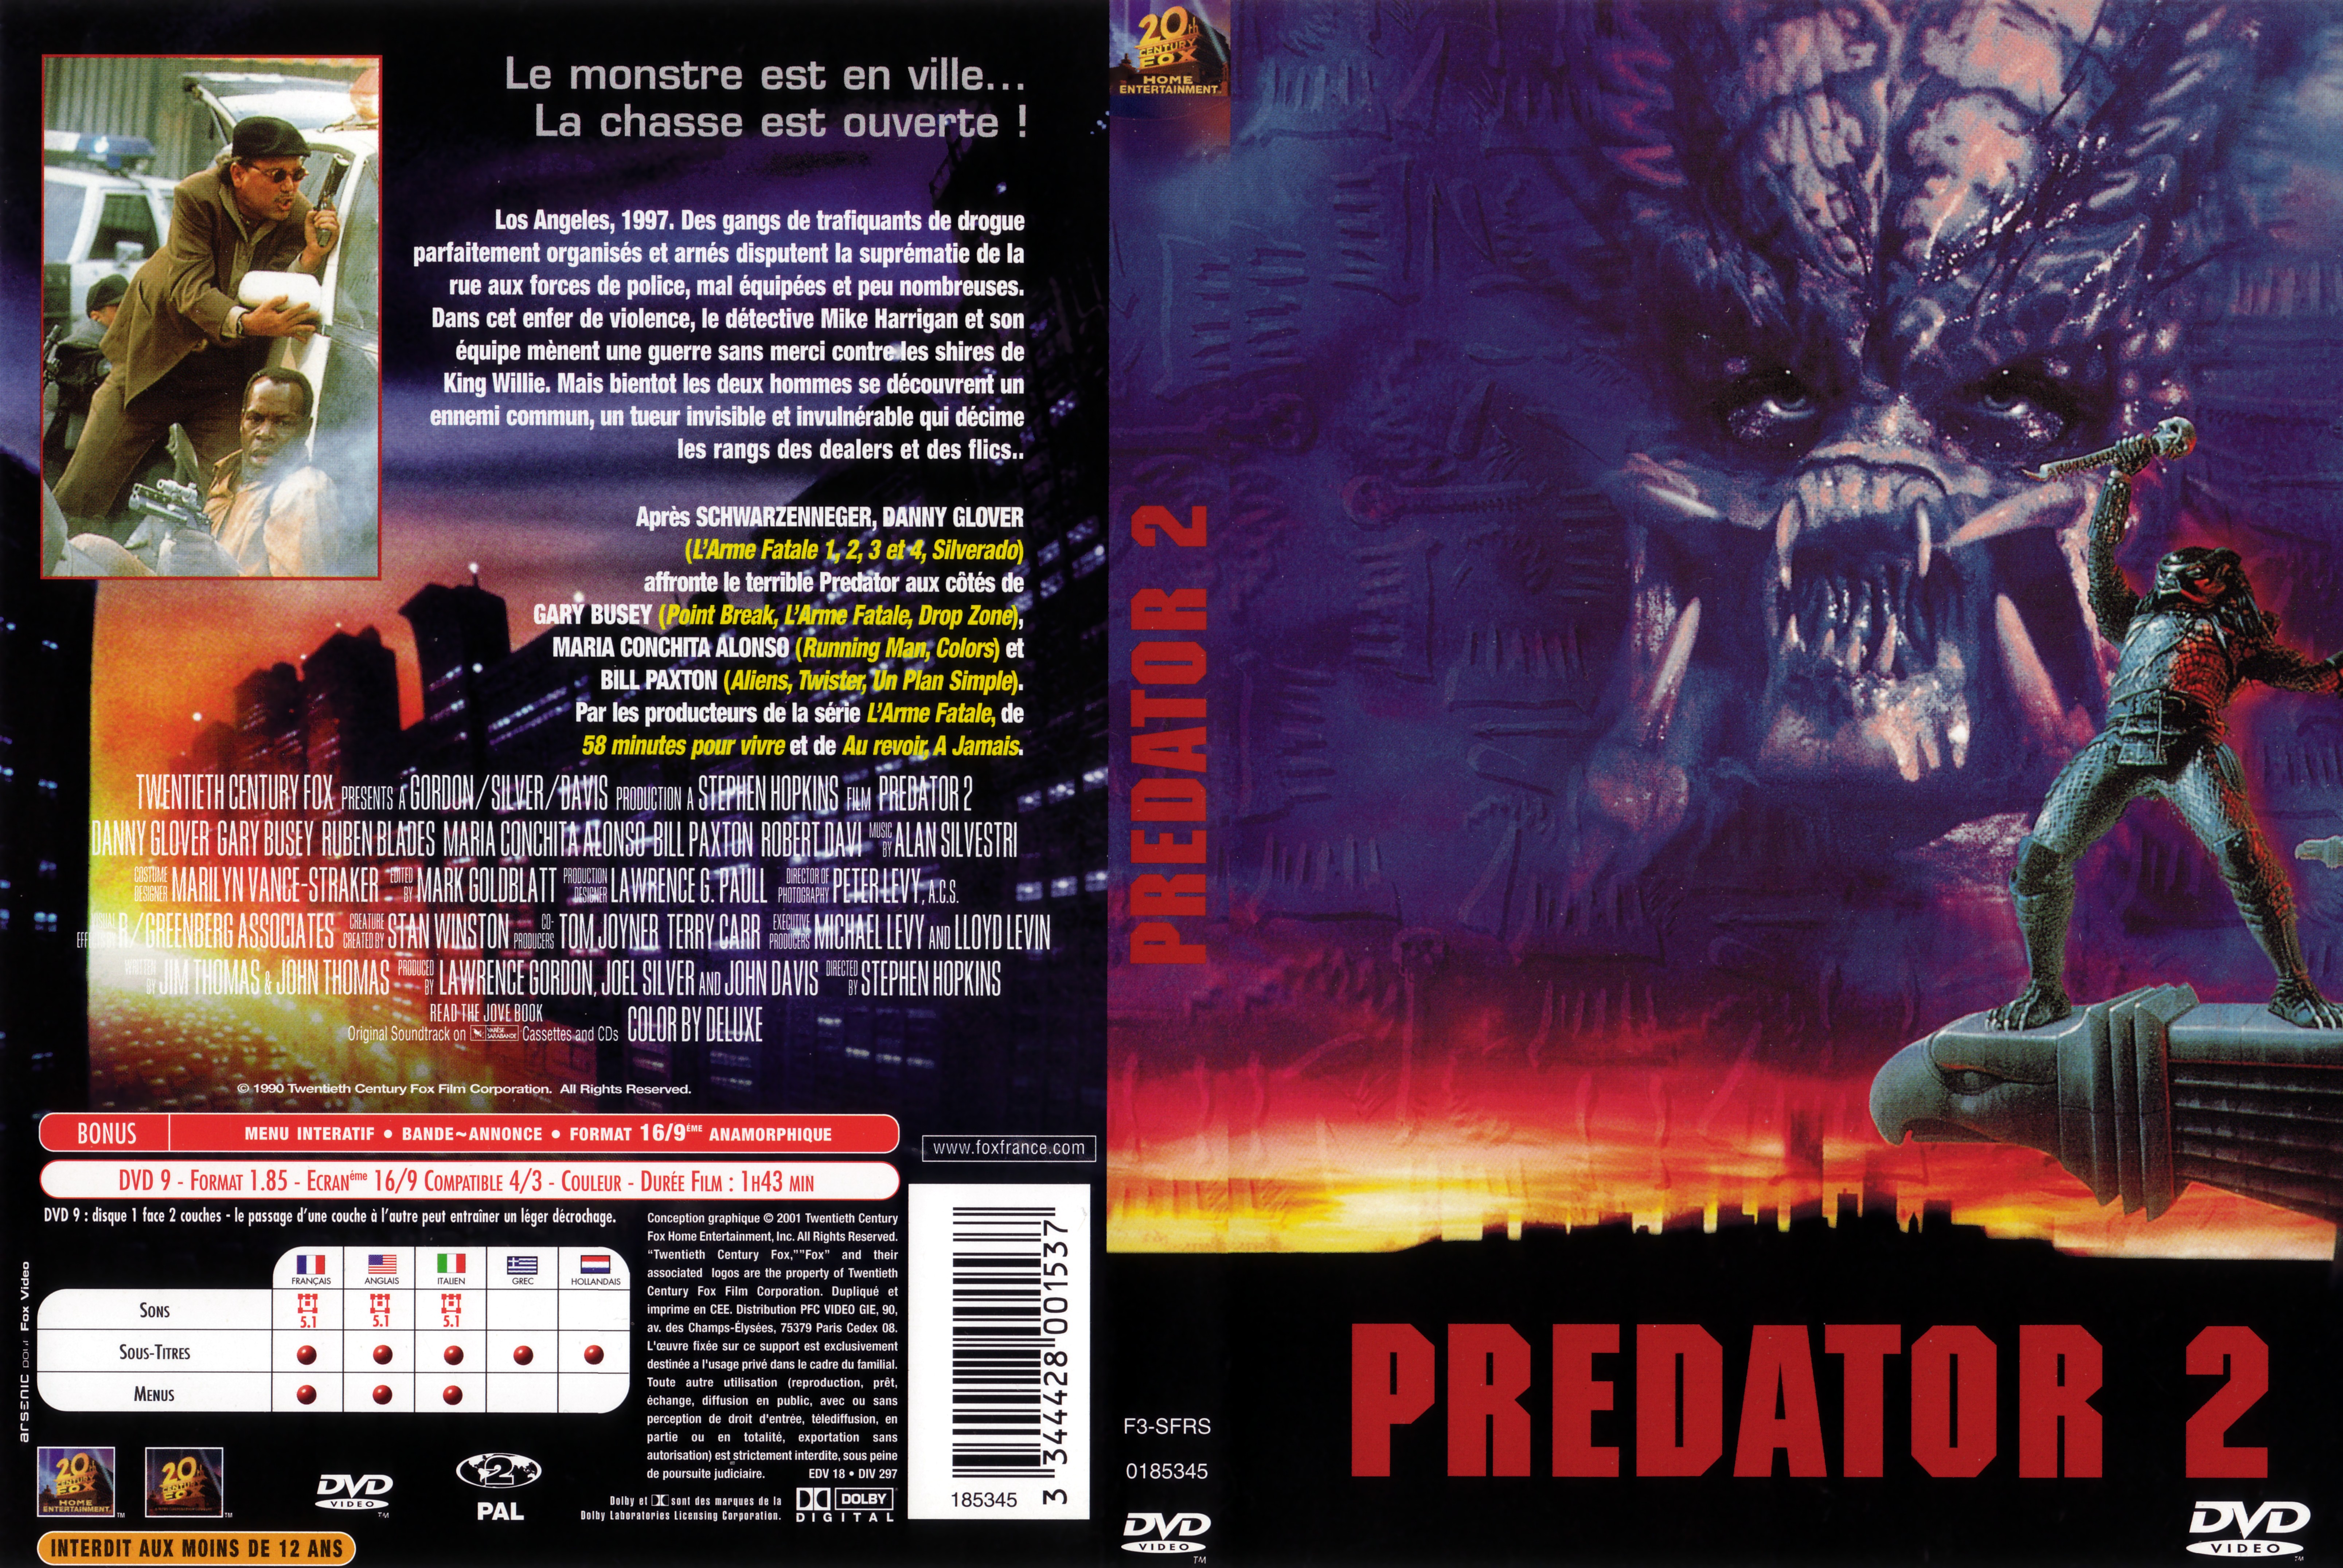 Jaquette DVD Predator 2 v2